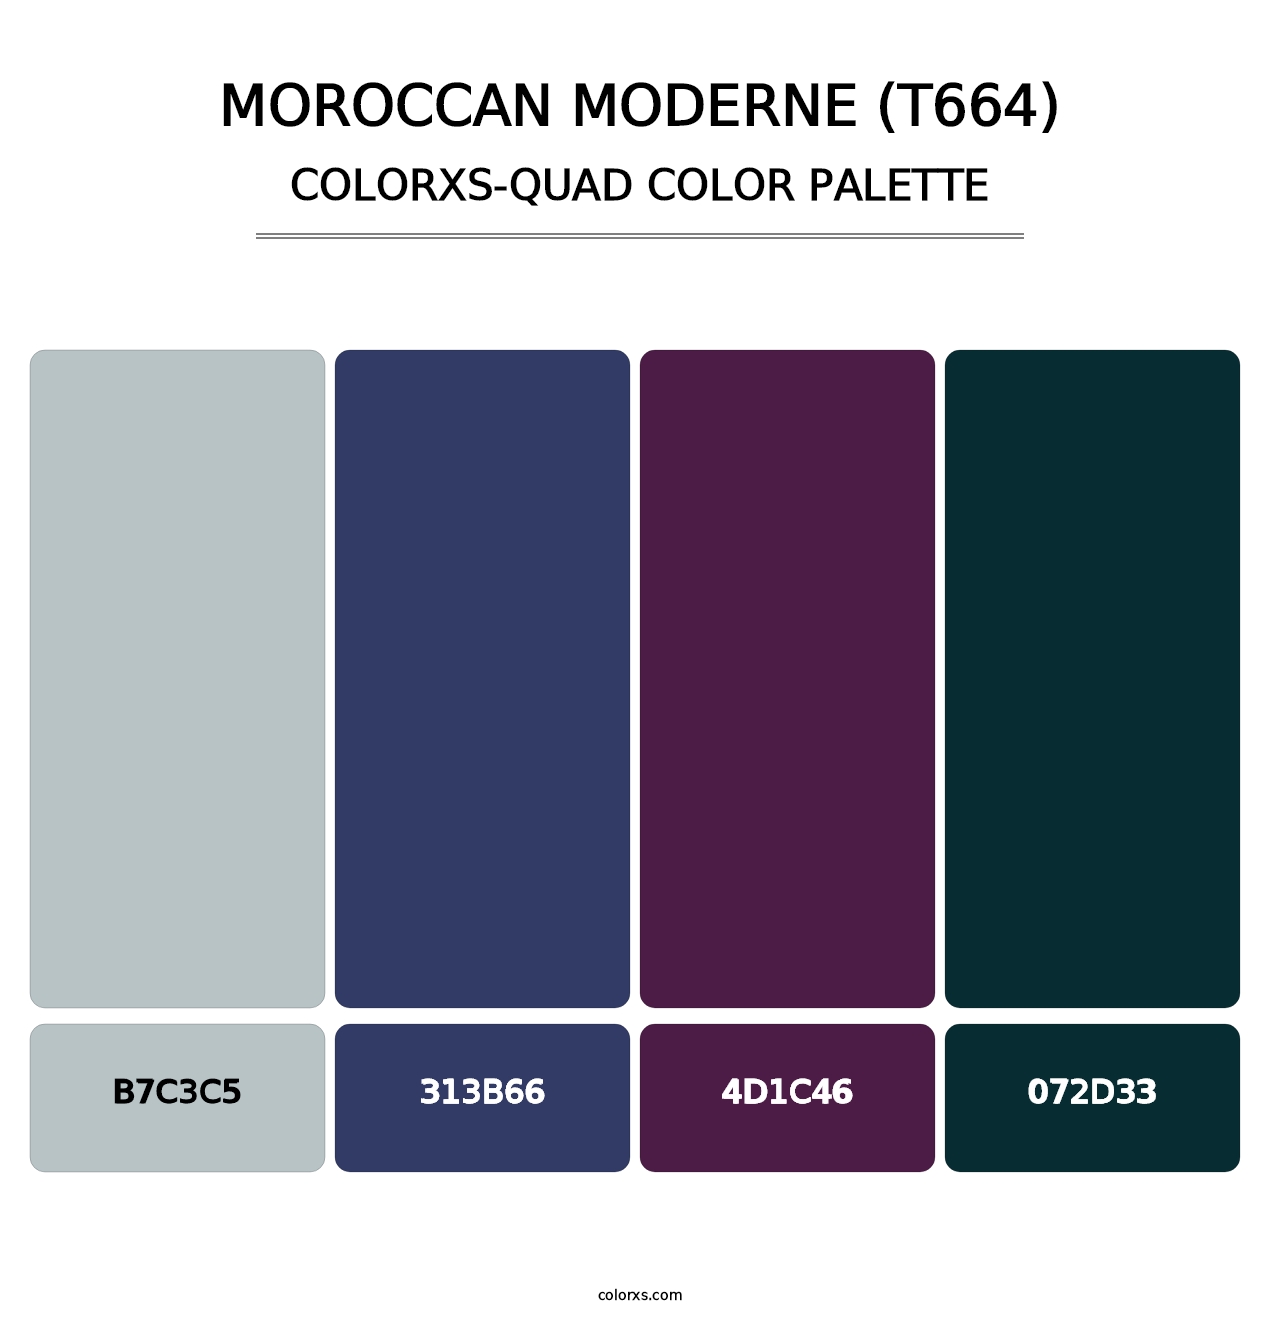 Moroccan Moderne (T664) - Colorxs Quad Palette